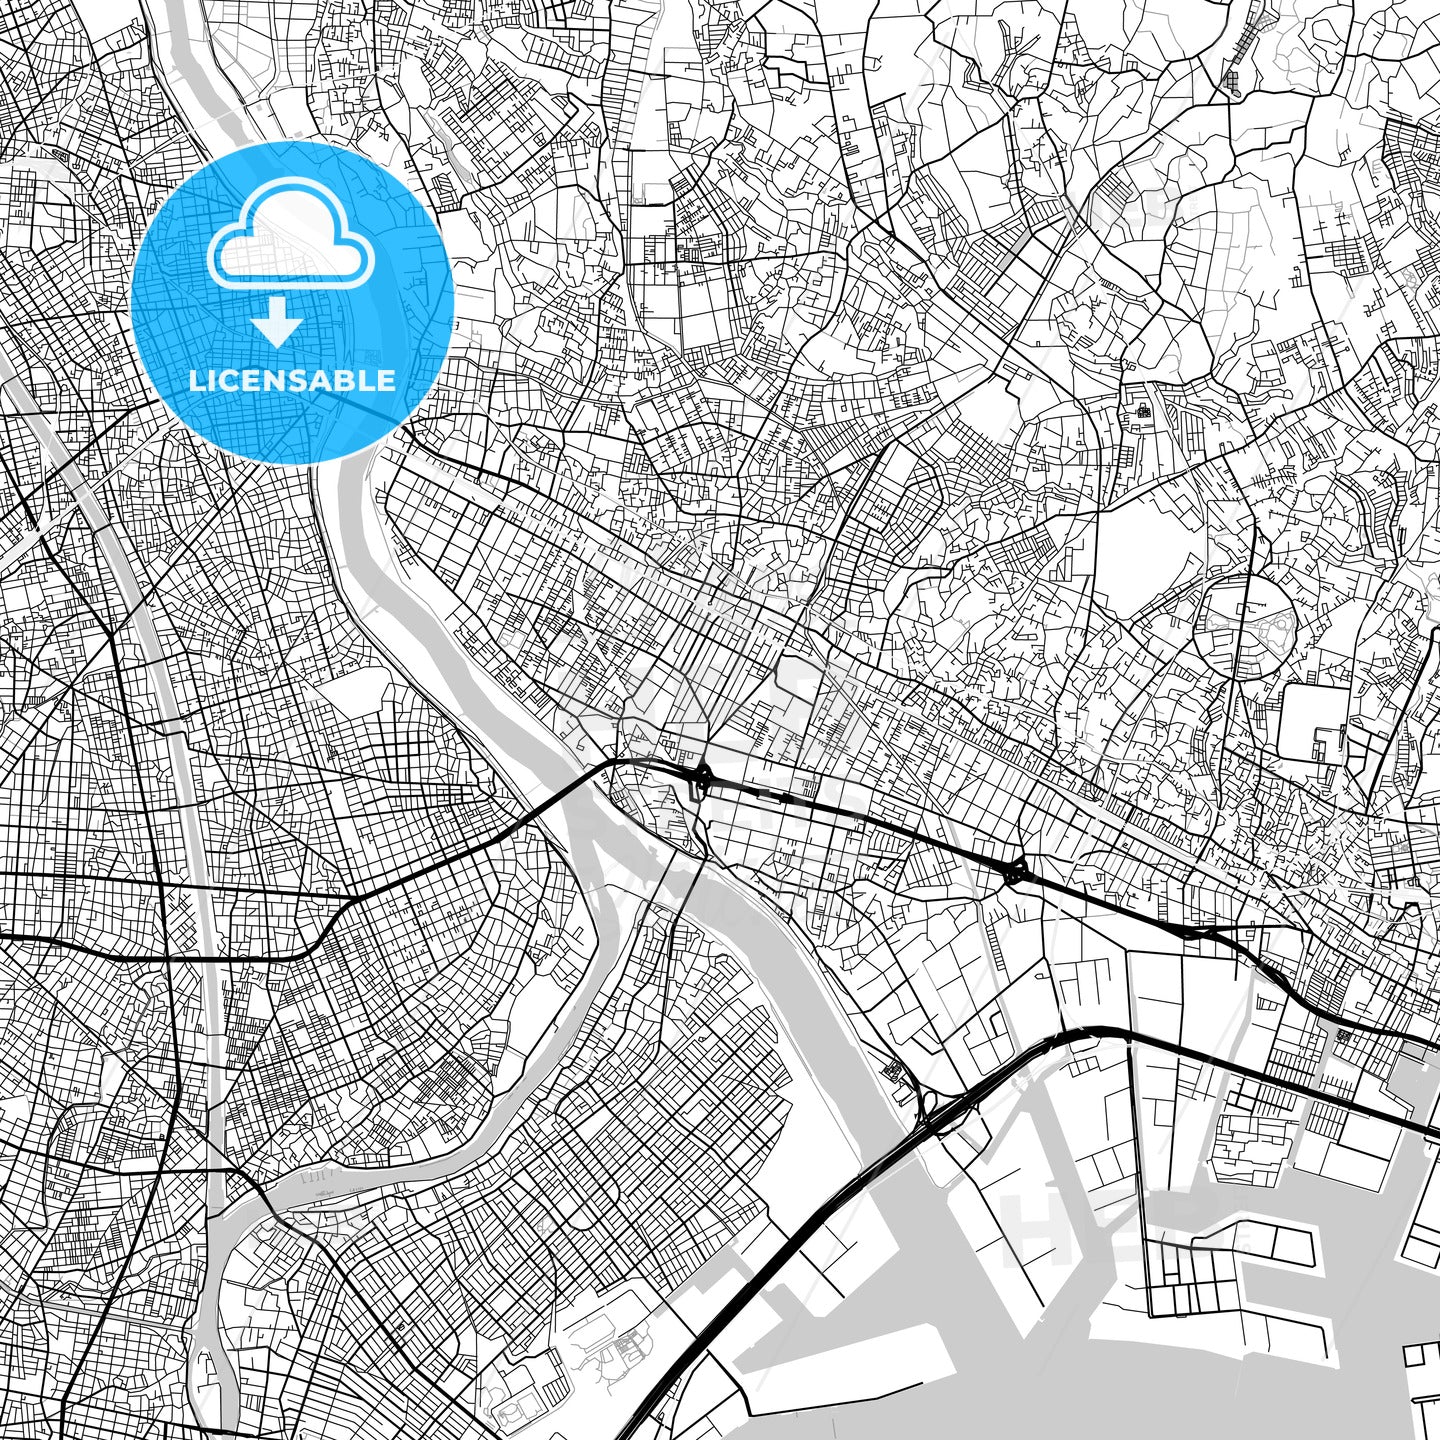 市川市 Ichikawa, City Map, Light